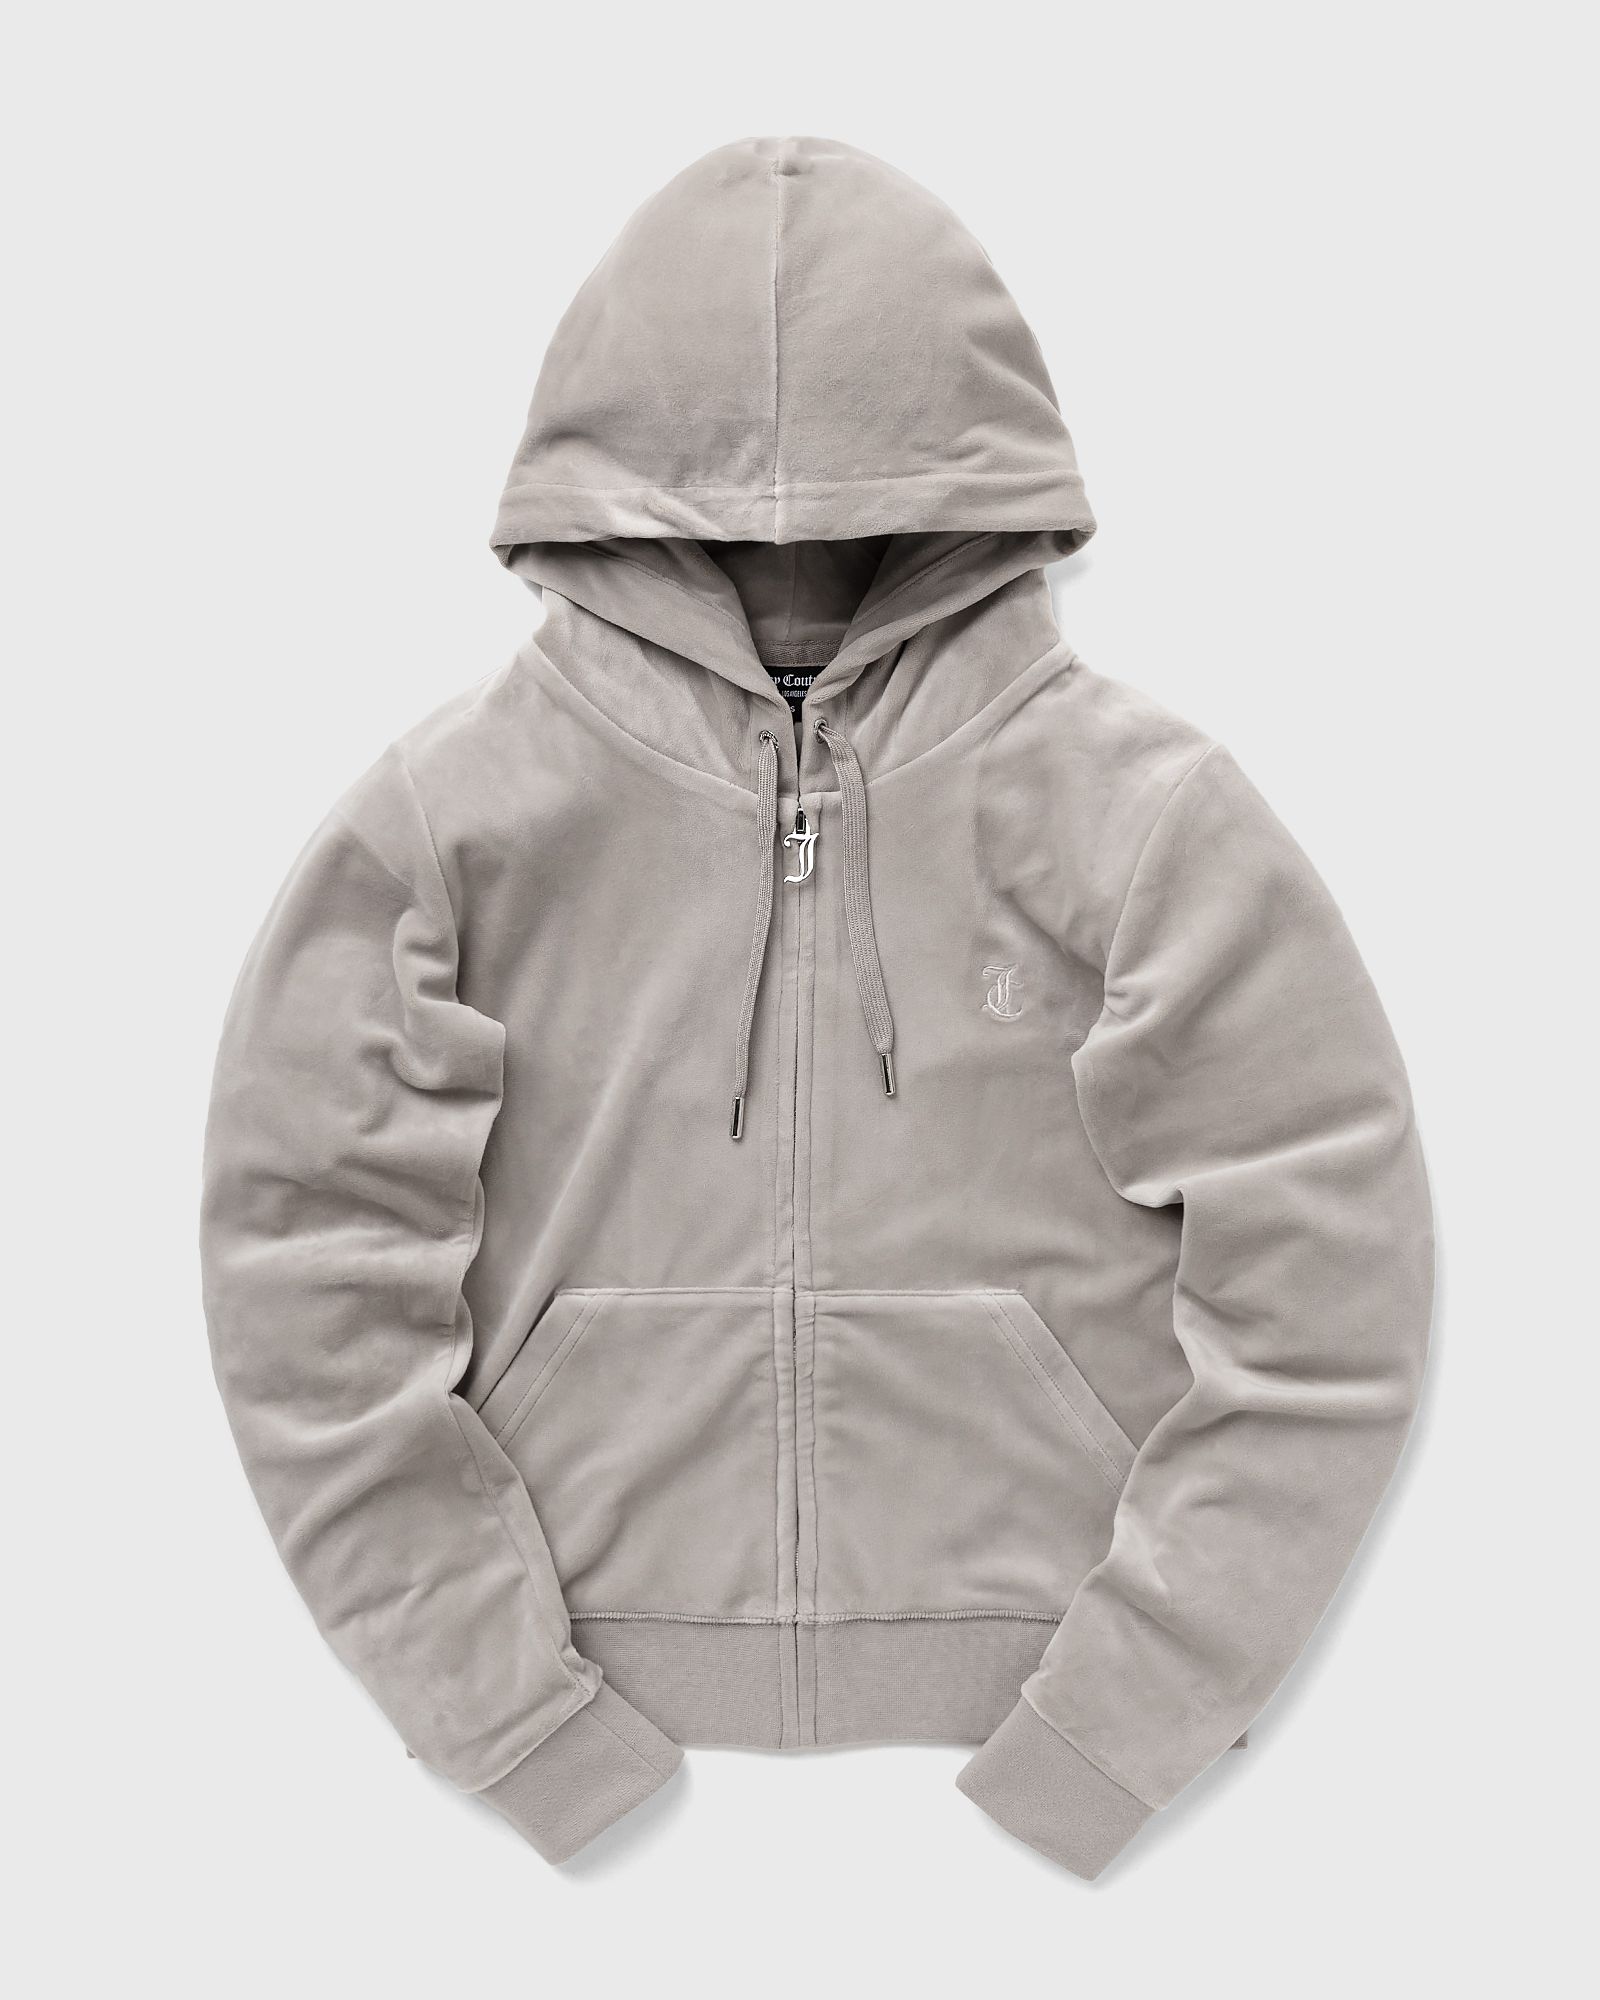 Juicy Couture - classic velour robertson zip hoodie women hoodies|zippers grey in größe:s